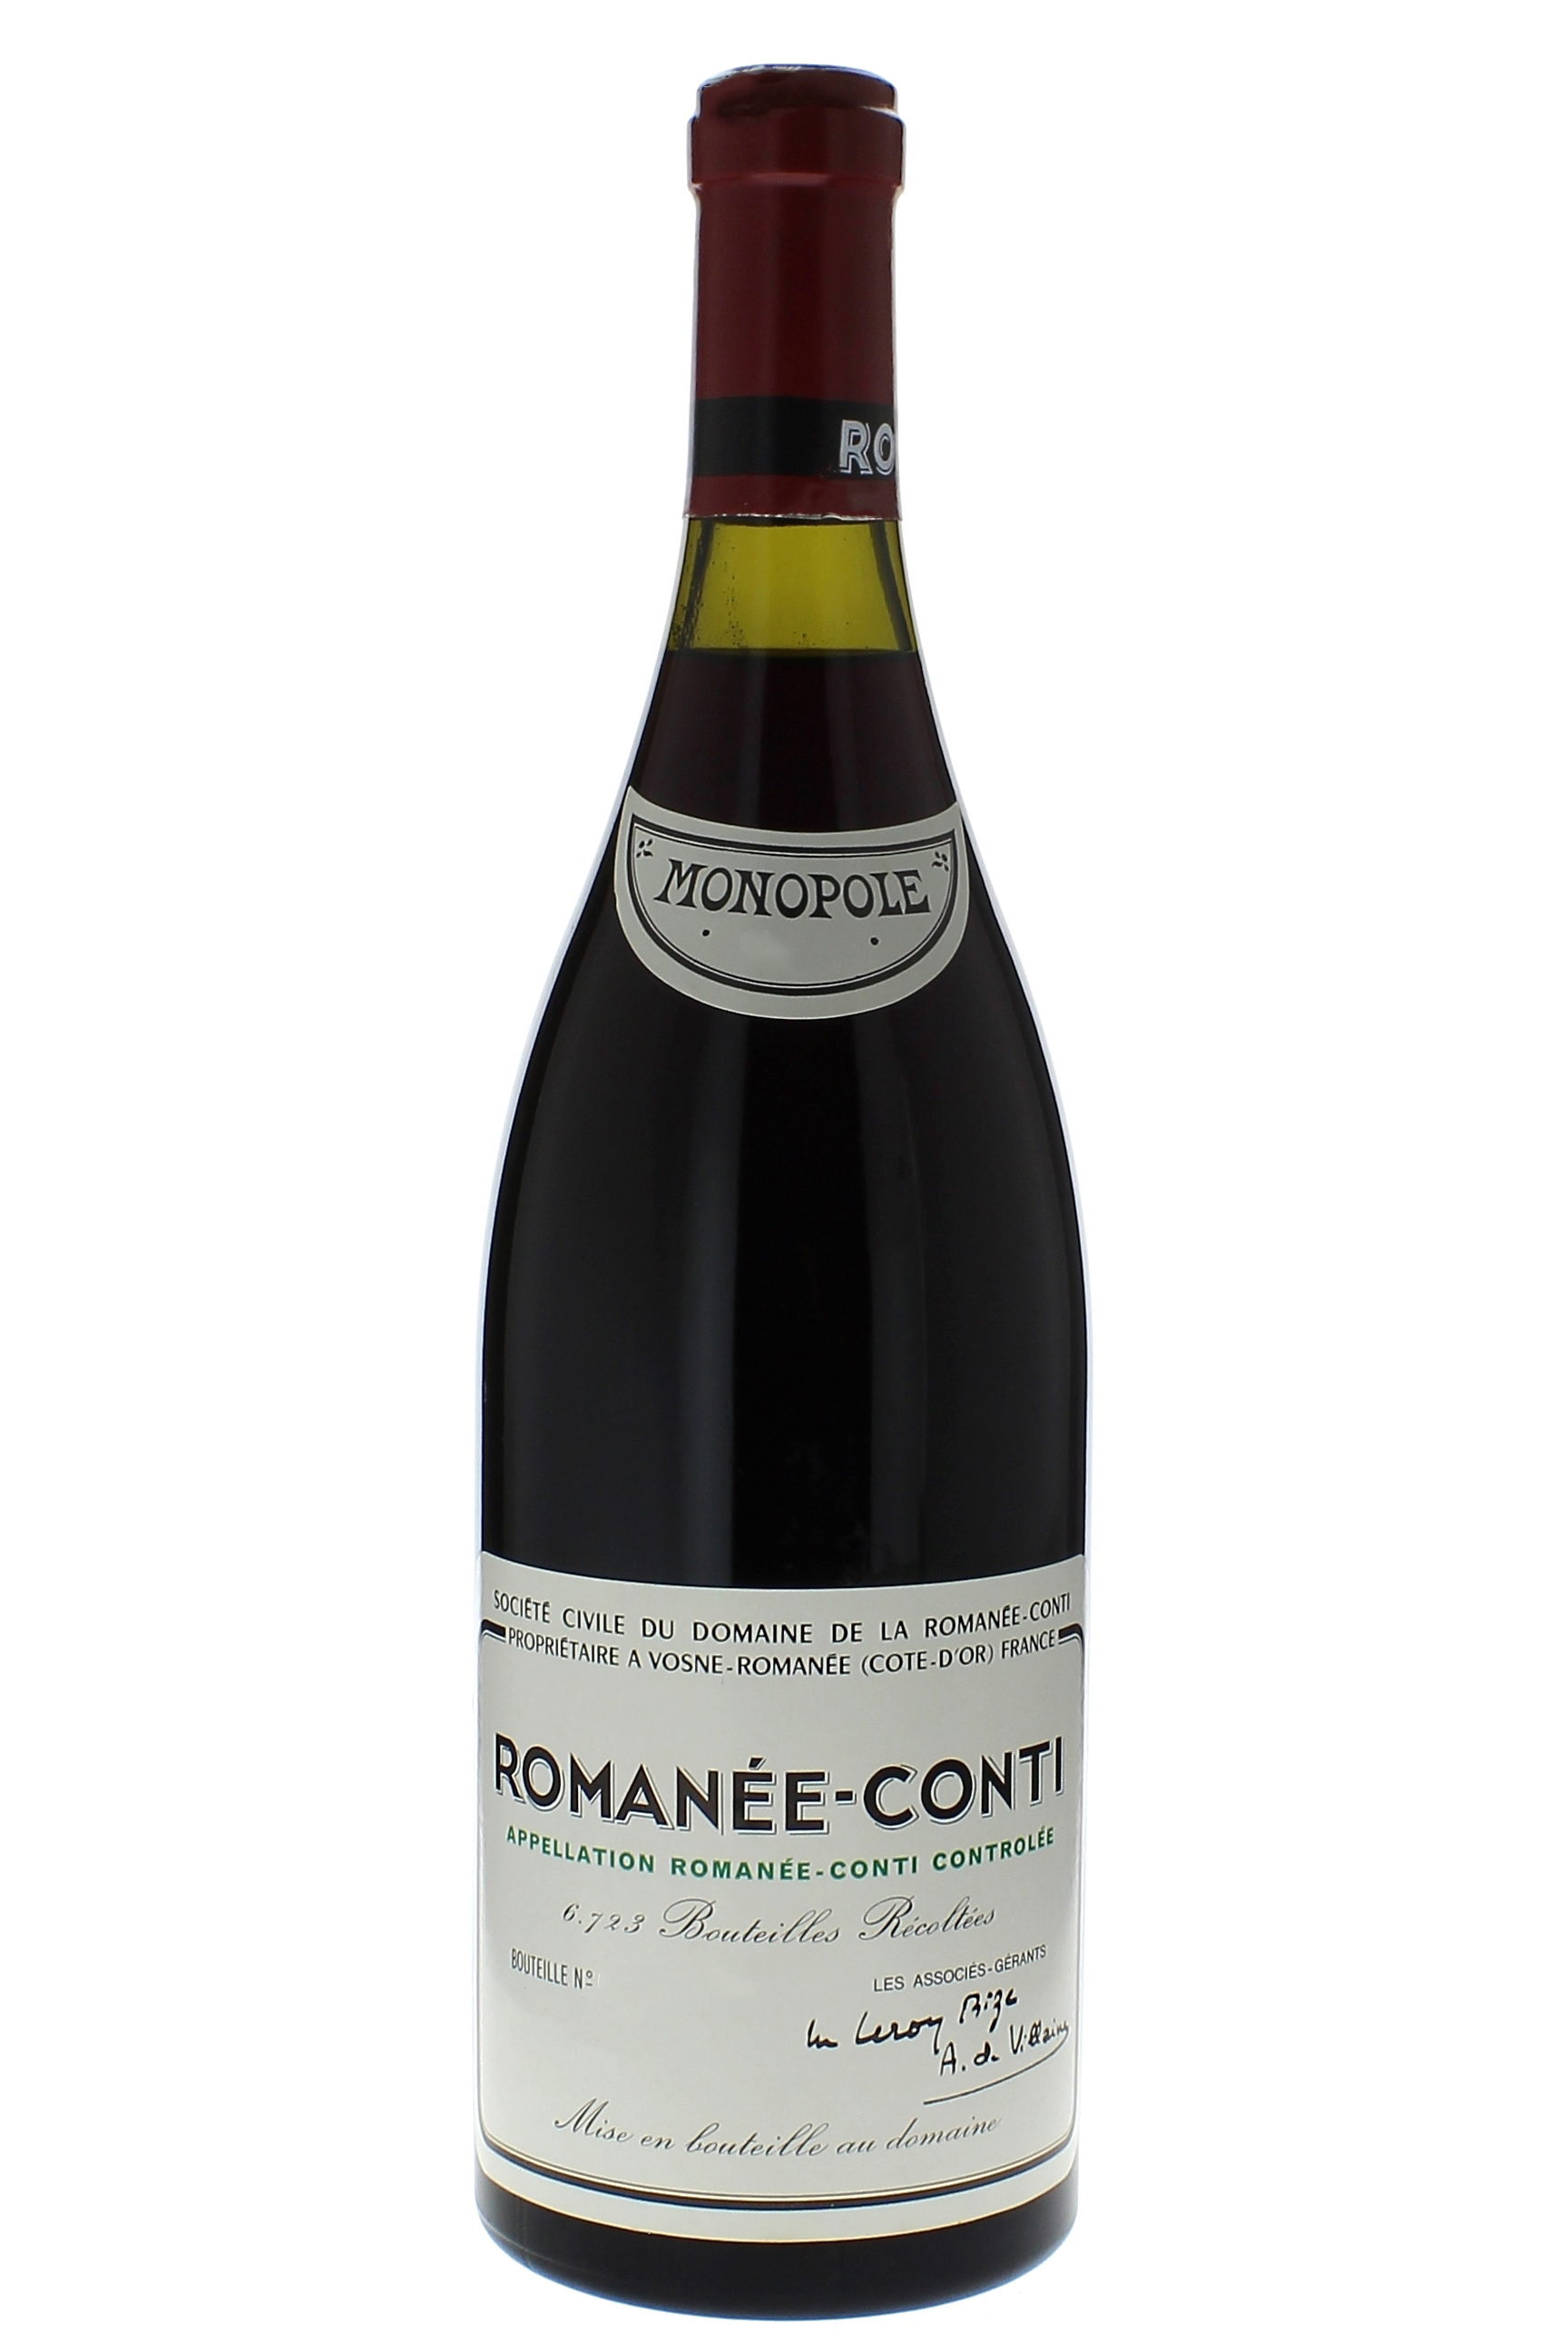 Romane conti grand cru 1973 Domaine ROMANEE CONTI, Bourgogne rouge